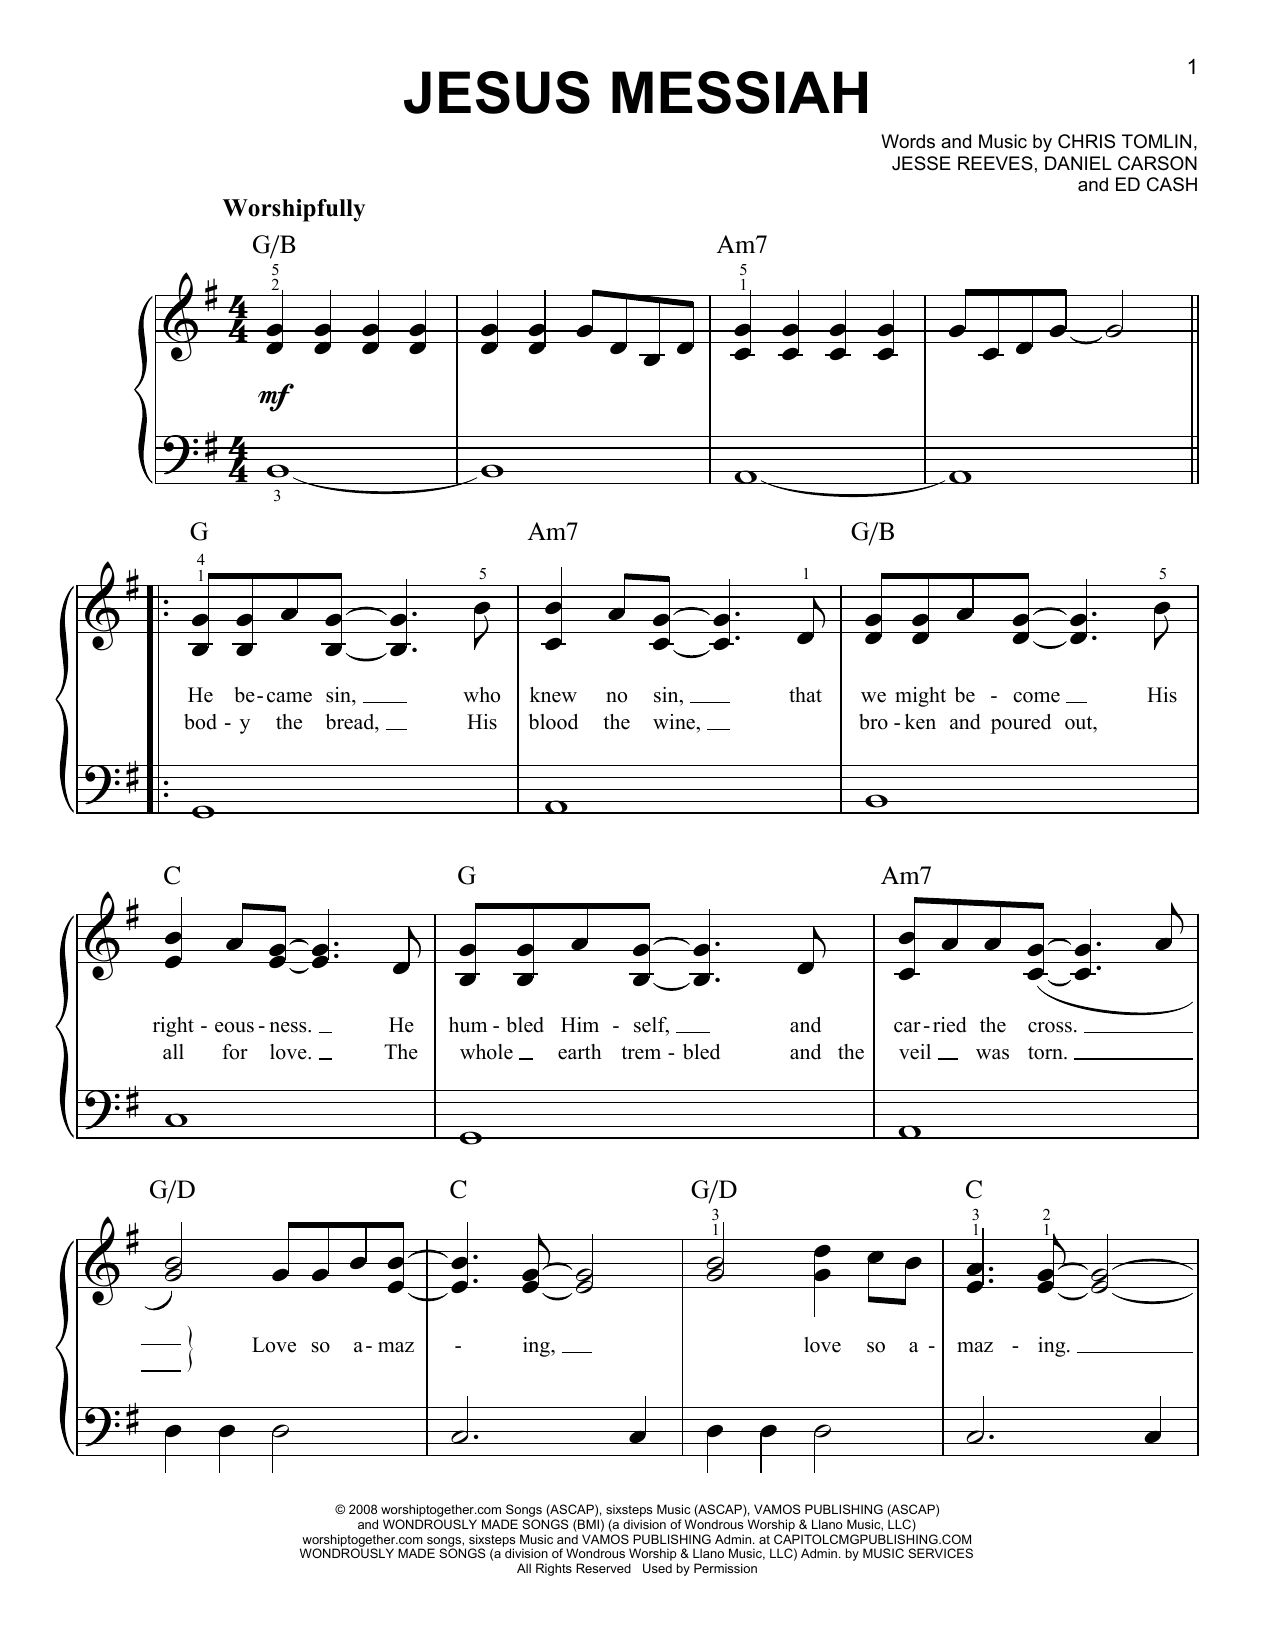 Chris Tomlin Jesus Messiah Sheet Music Notes & Chords for Lyrics & Chords - Download or Print PDF